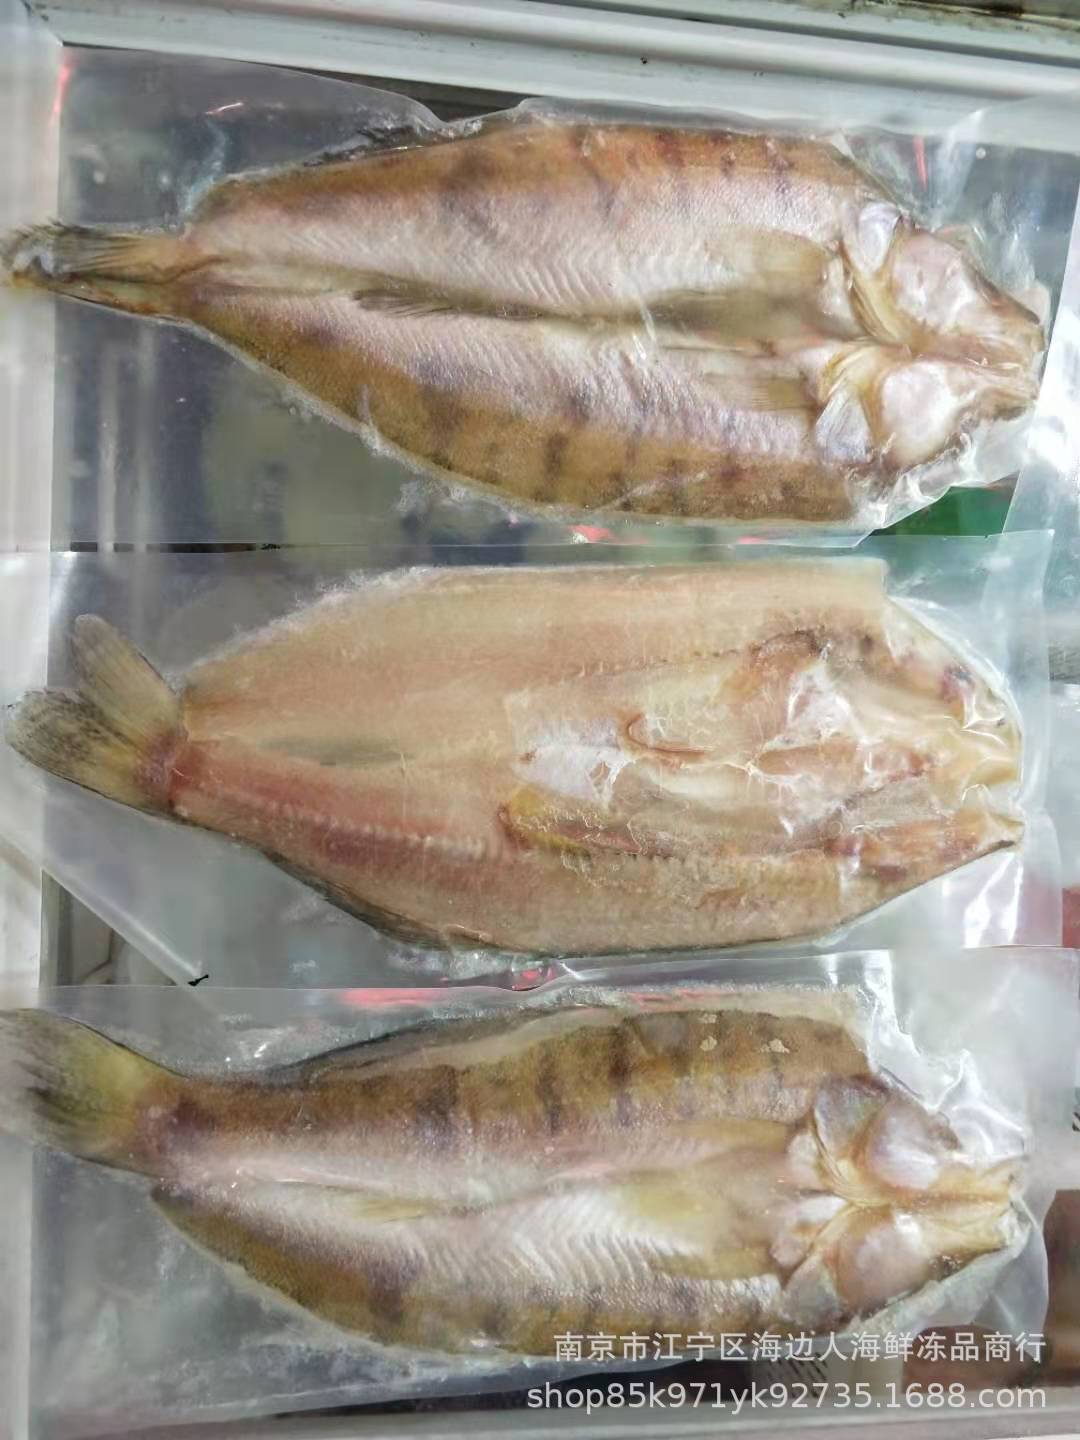 3、一条雪龙鱼多少钱:孔雀鱼一般多少钱一条？